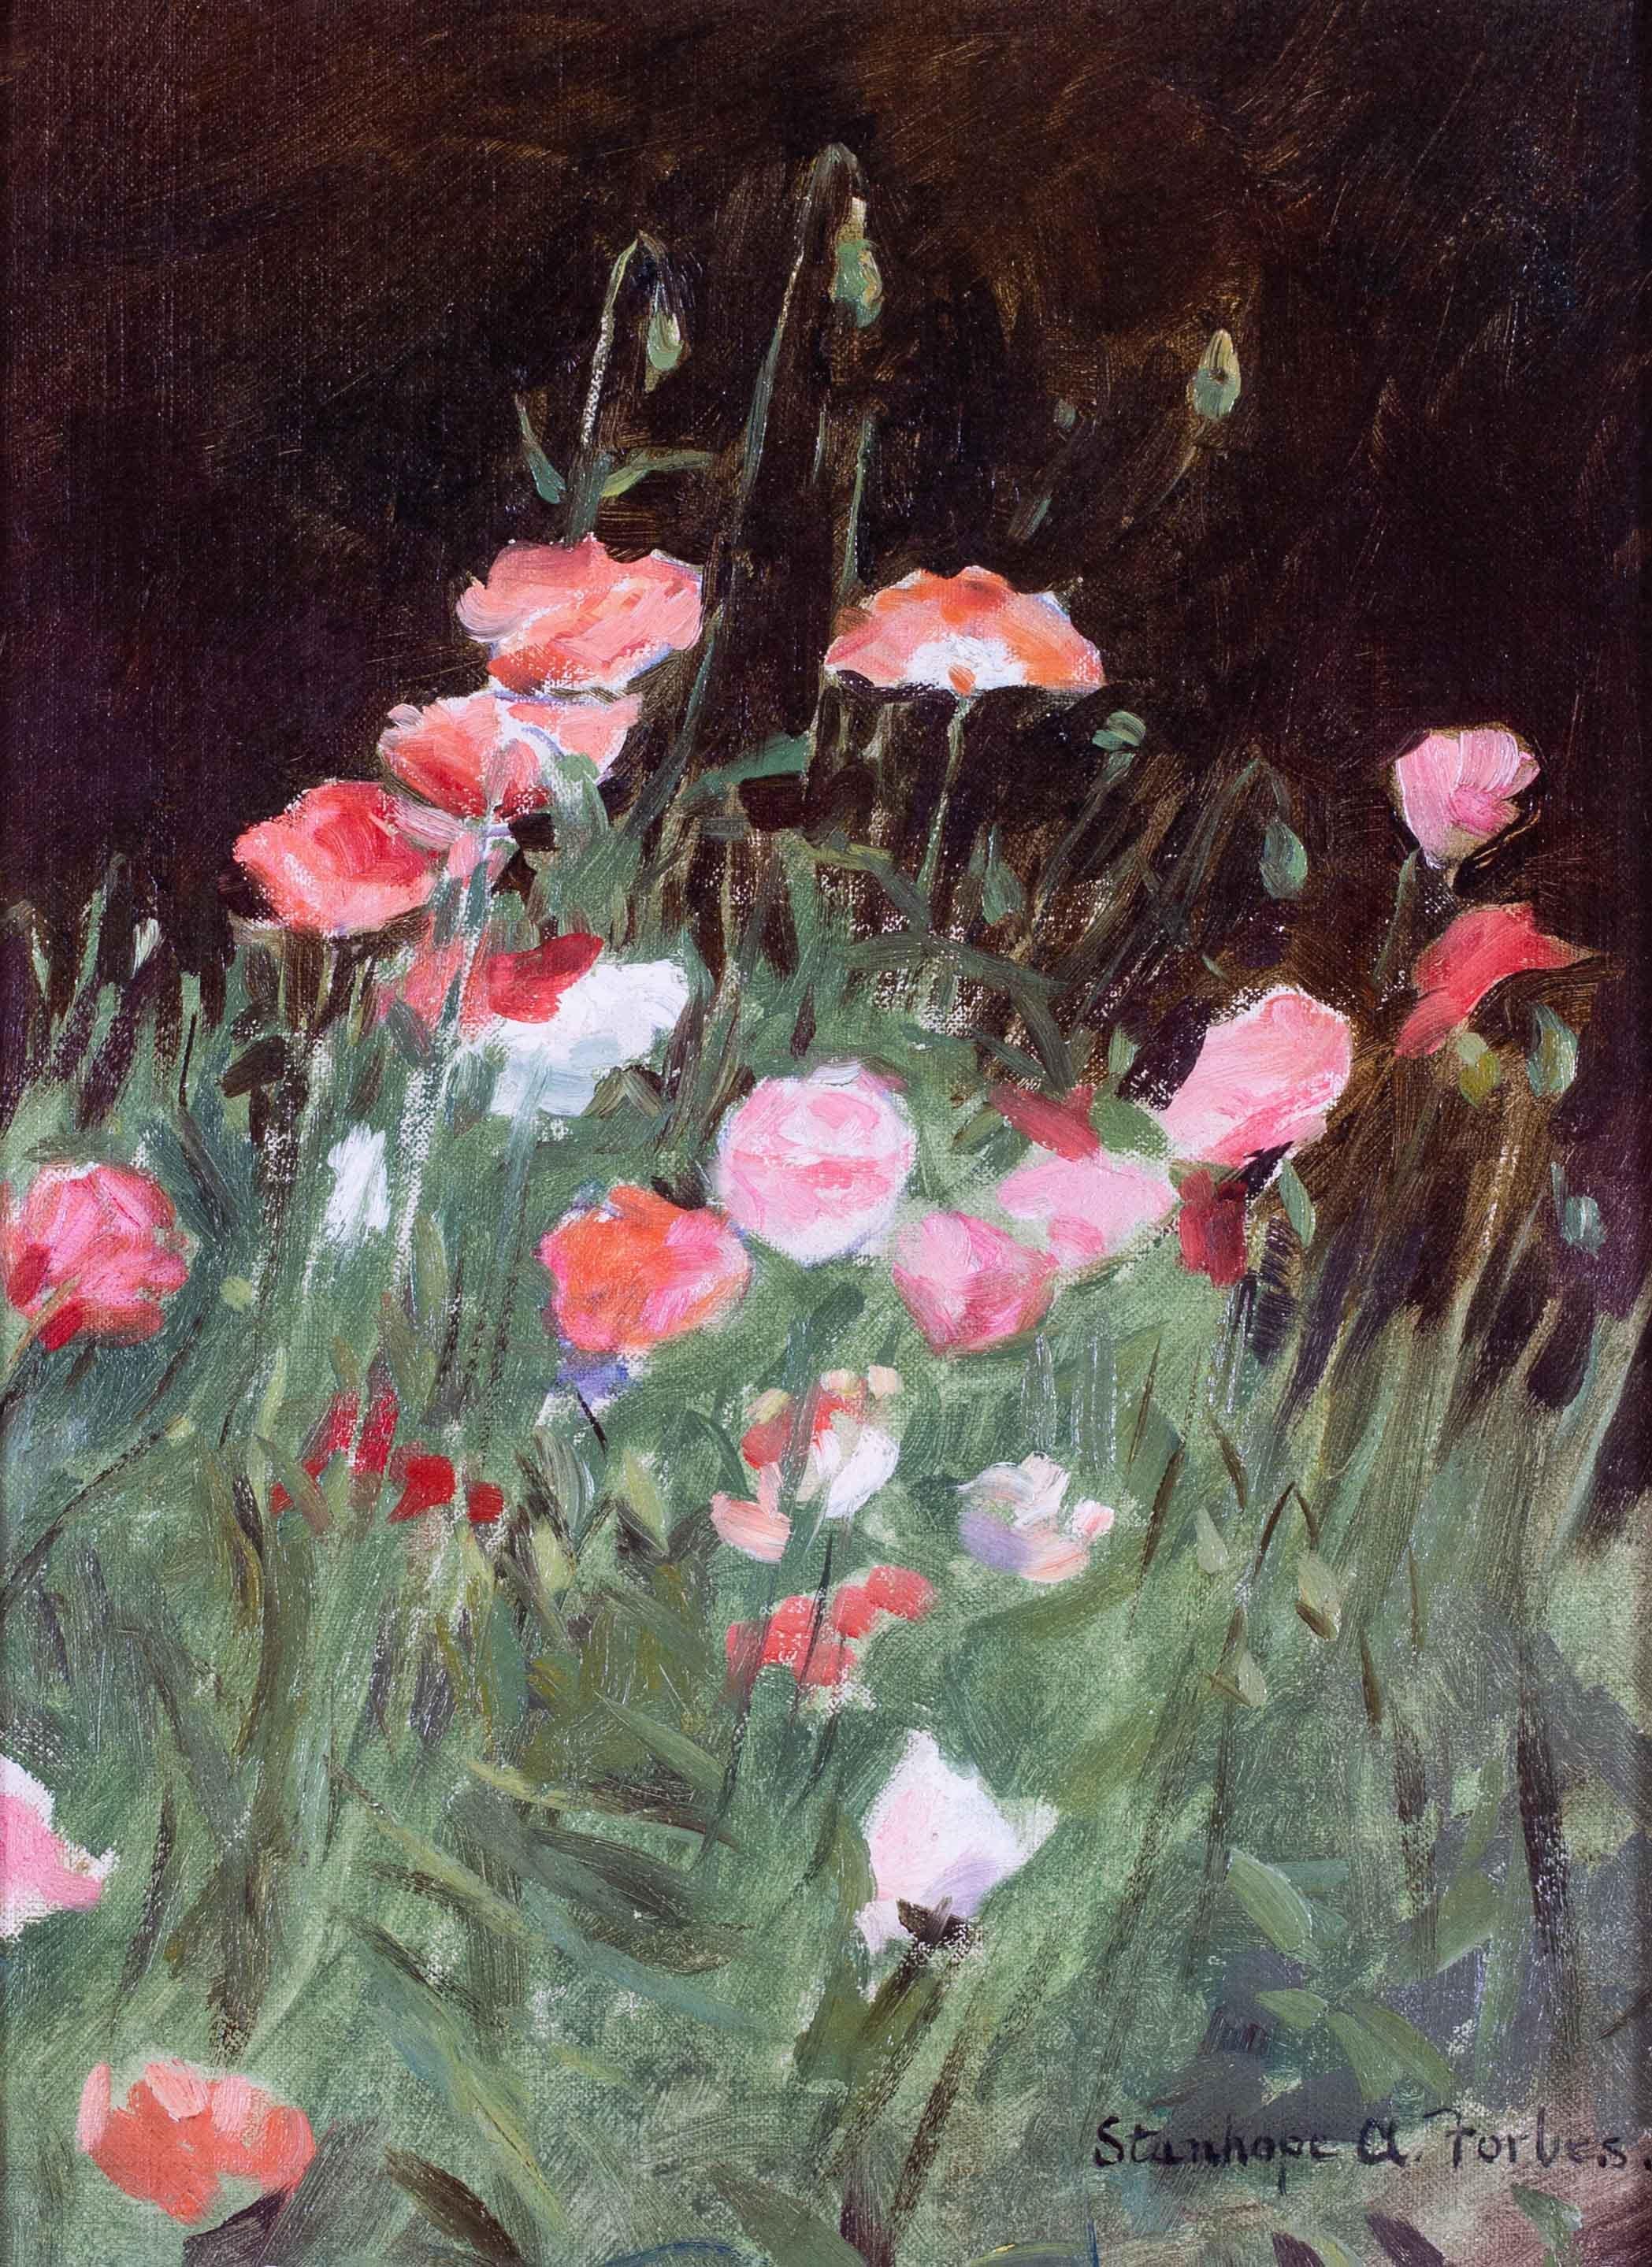 Stanhope A Forbes, peinture à l'huile de poppies dans une prairie, britannique, 20e siècle - Painting de Stanhope Alexander Forbes